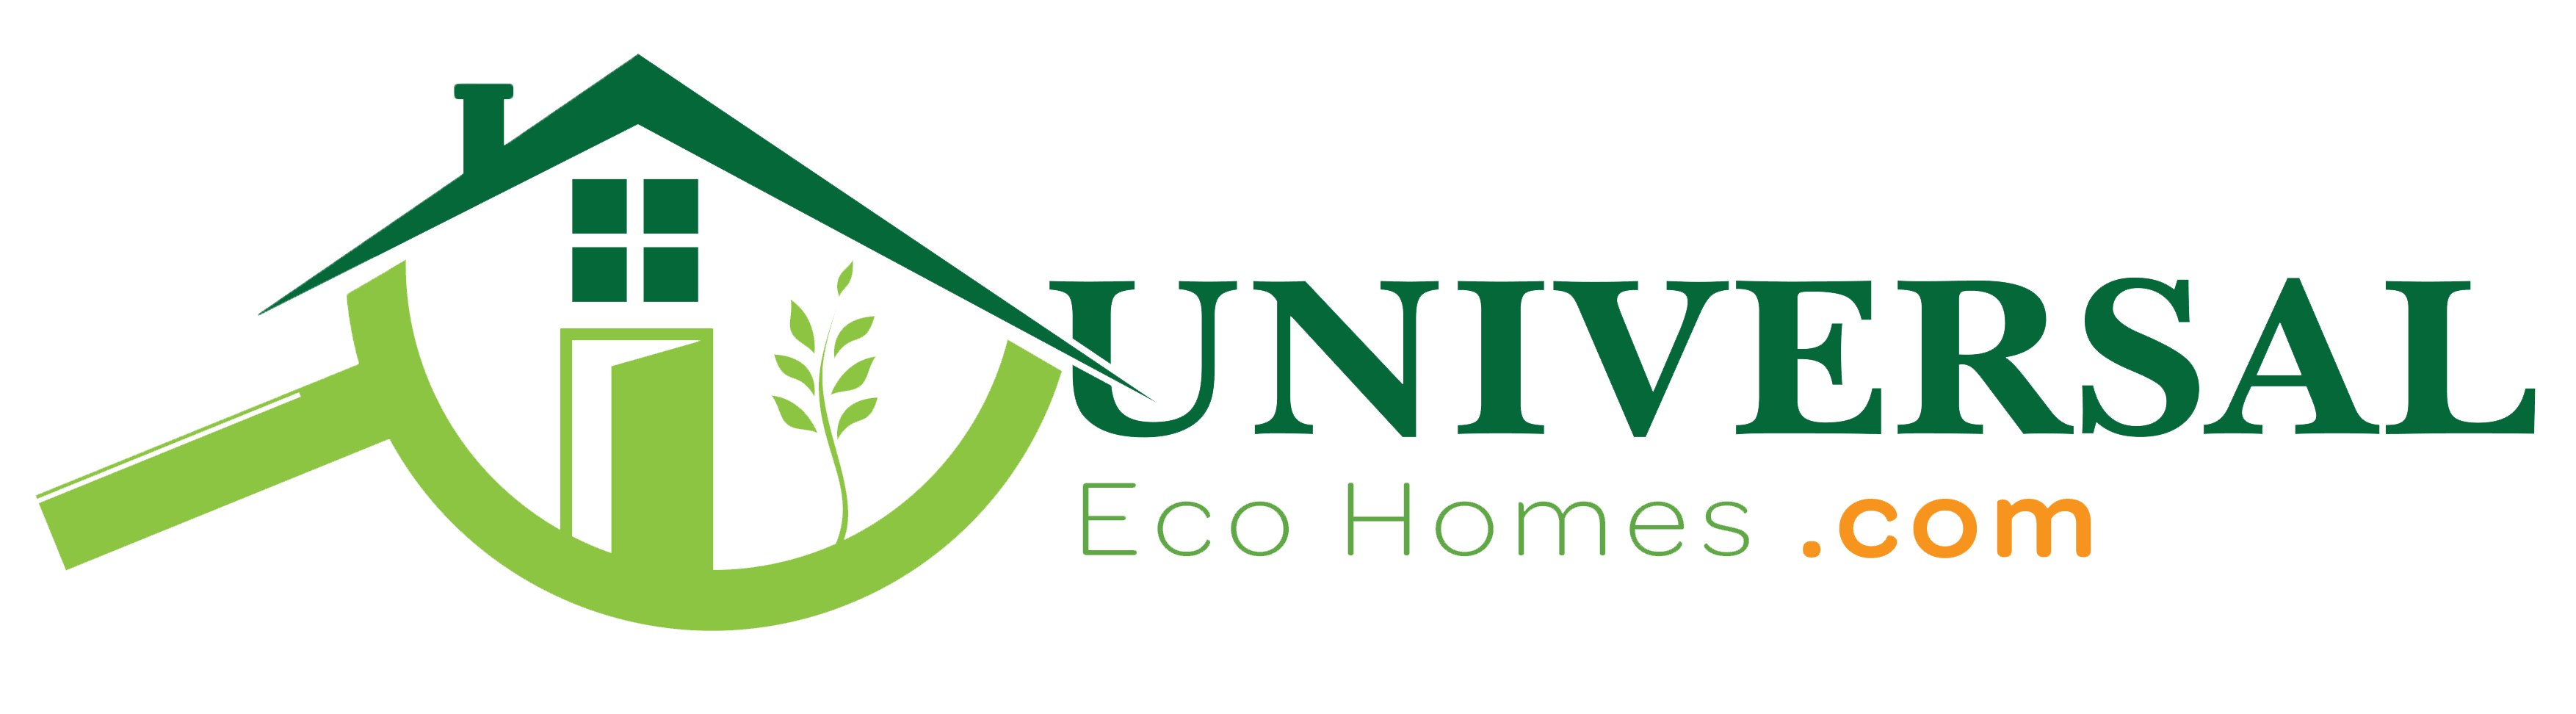 Eco Homes